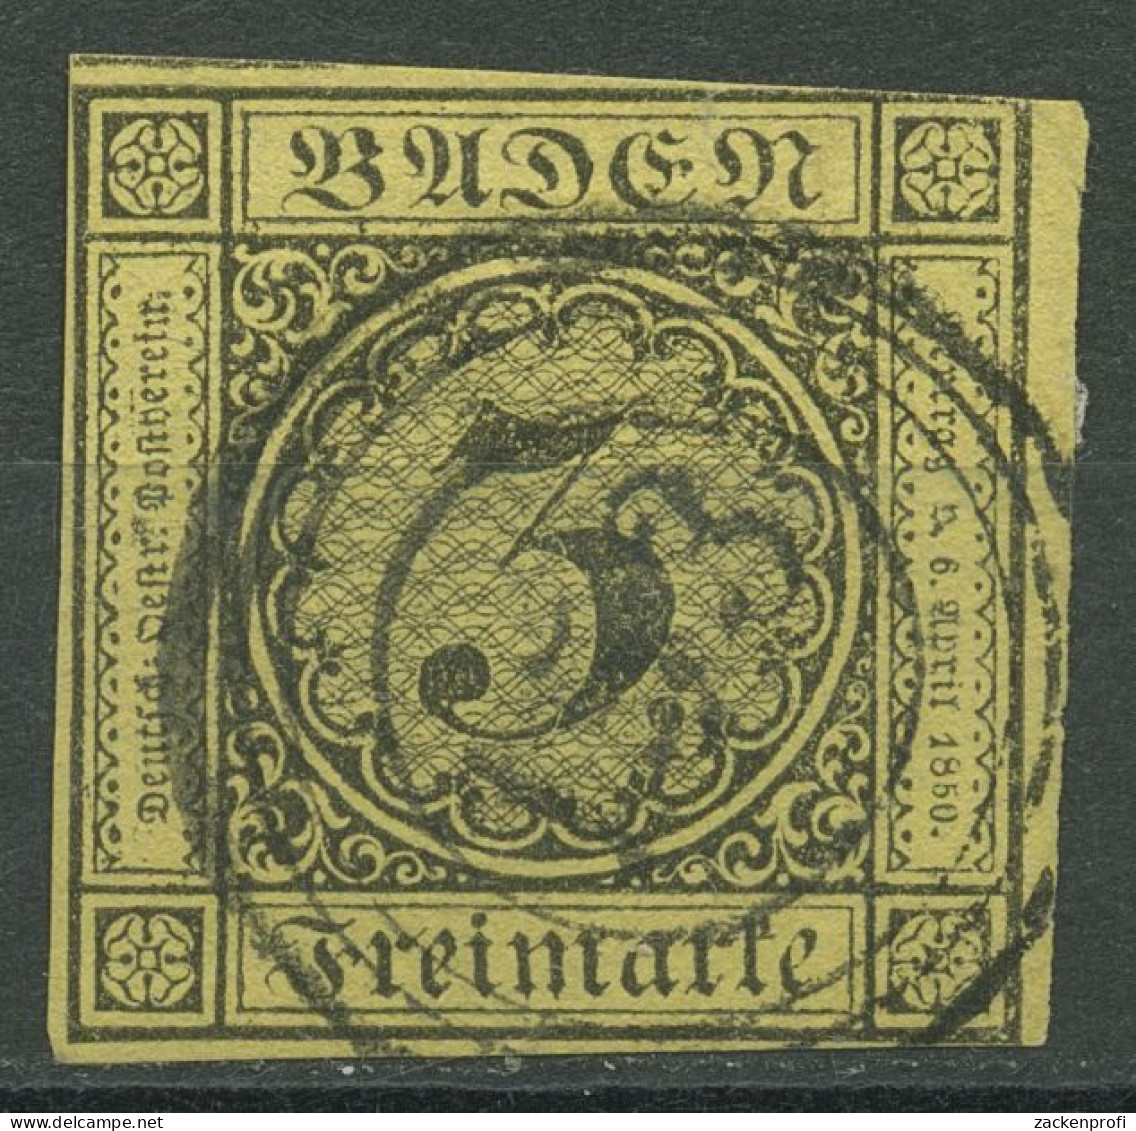 Baden 1851 3 Kreuzer Auf Gelb 2 B Mit Nr.-Stpl. 153 WALDSHUT - Gebraucht